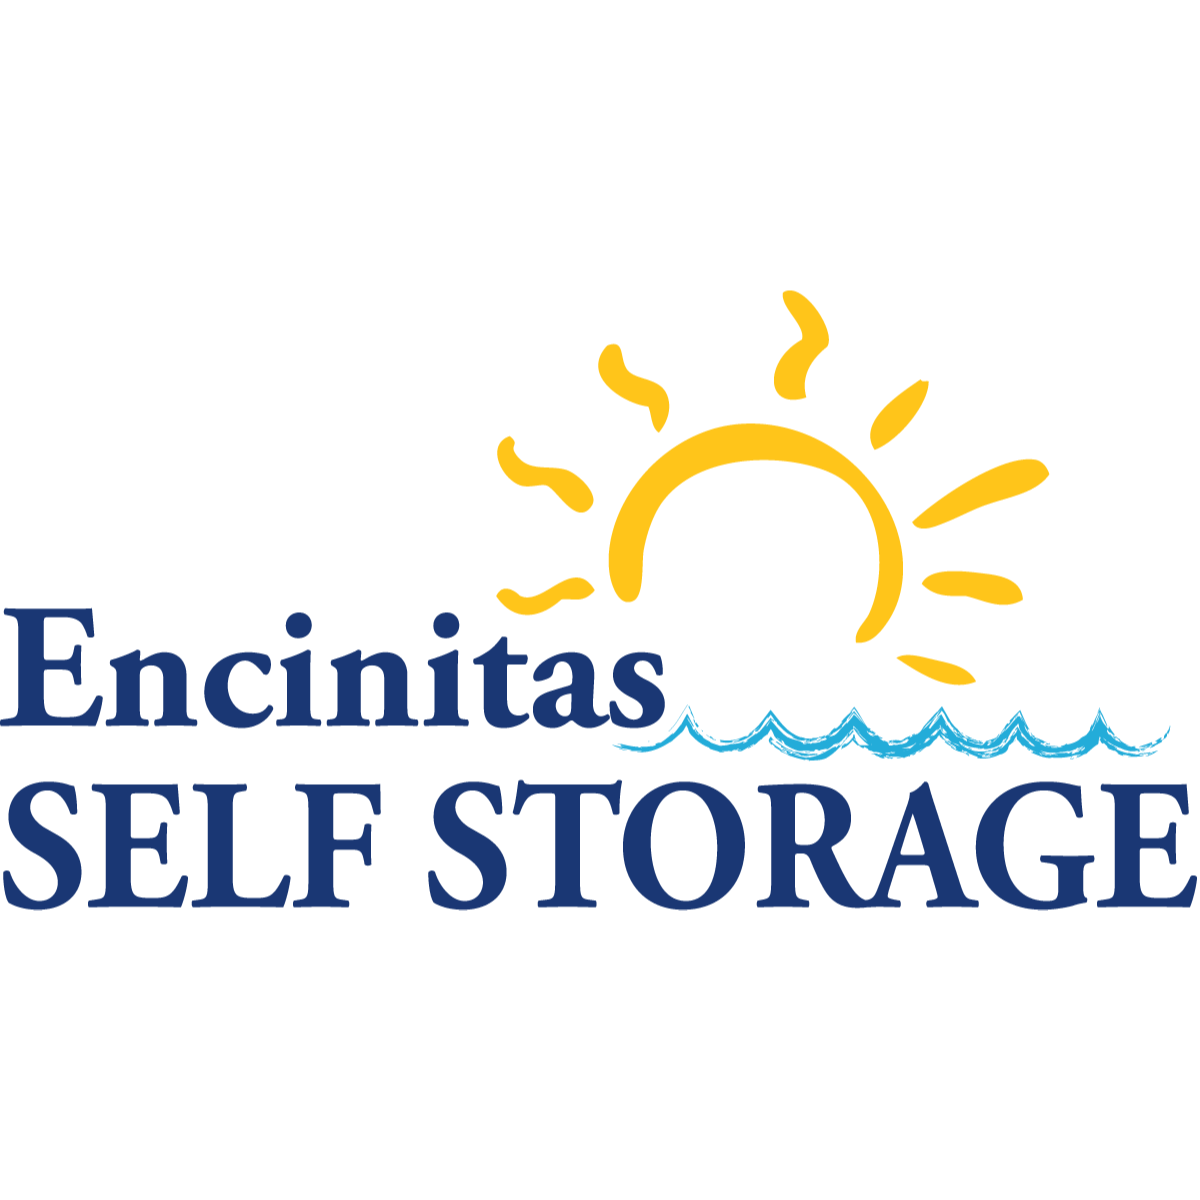 Encinitas Self Storage Encinitas (760)652-3969